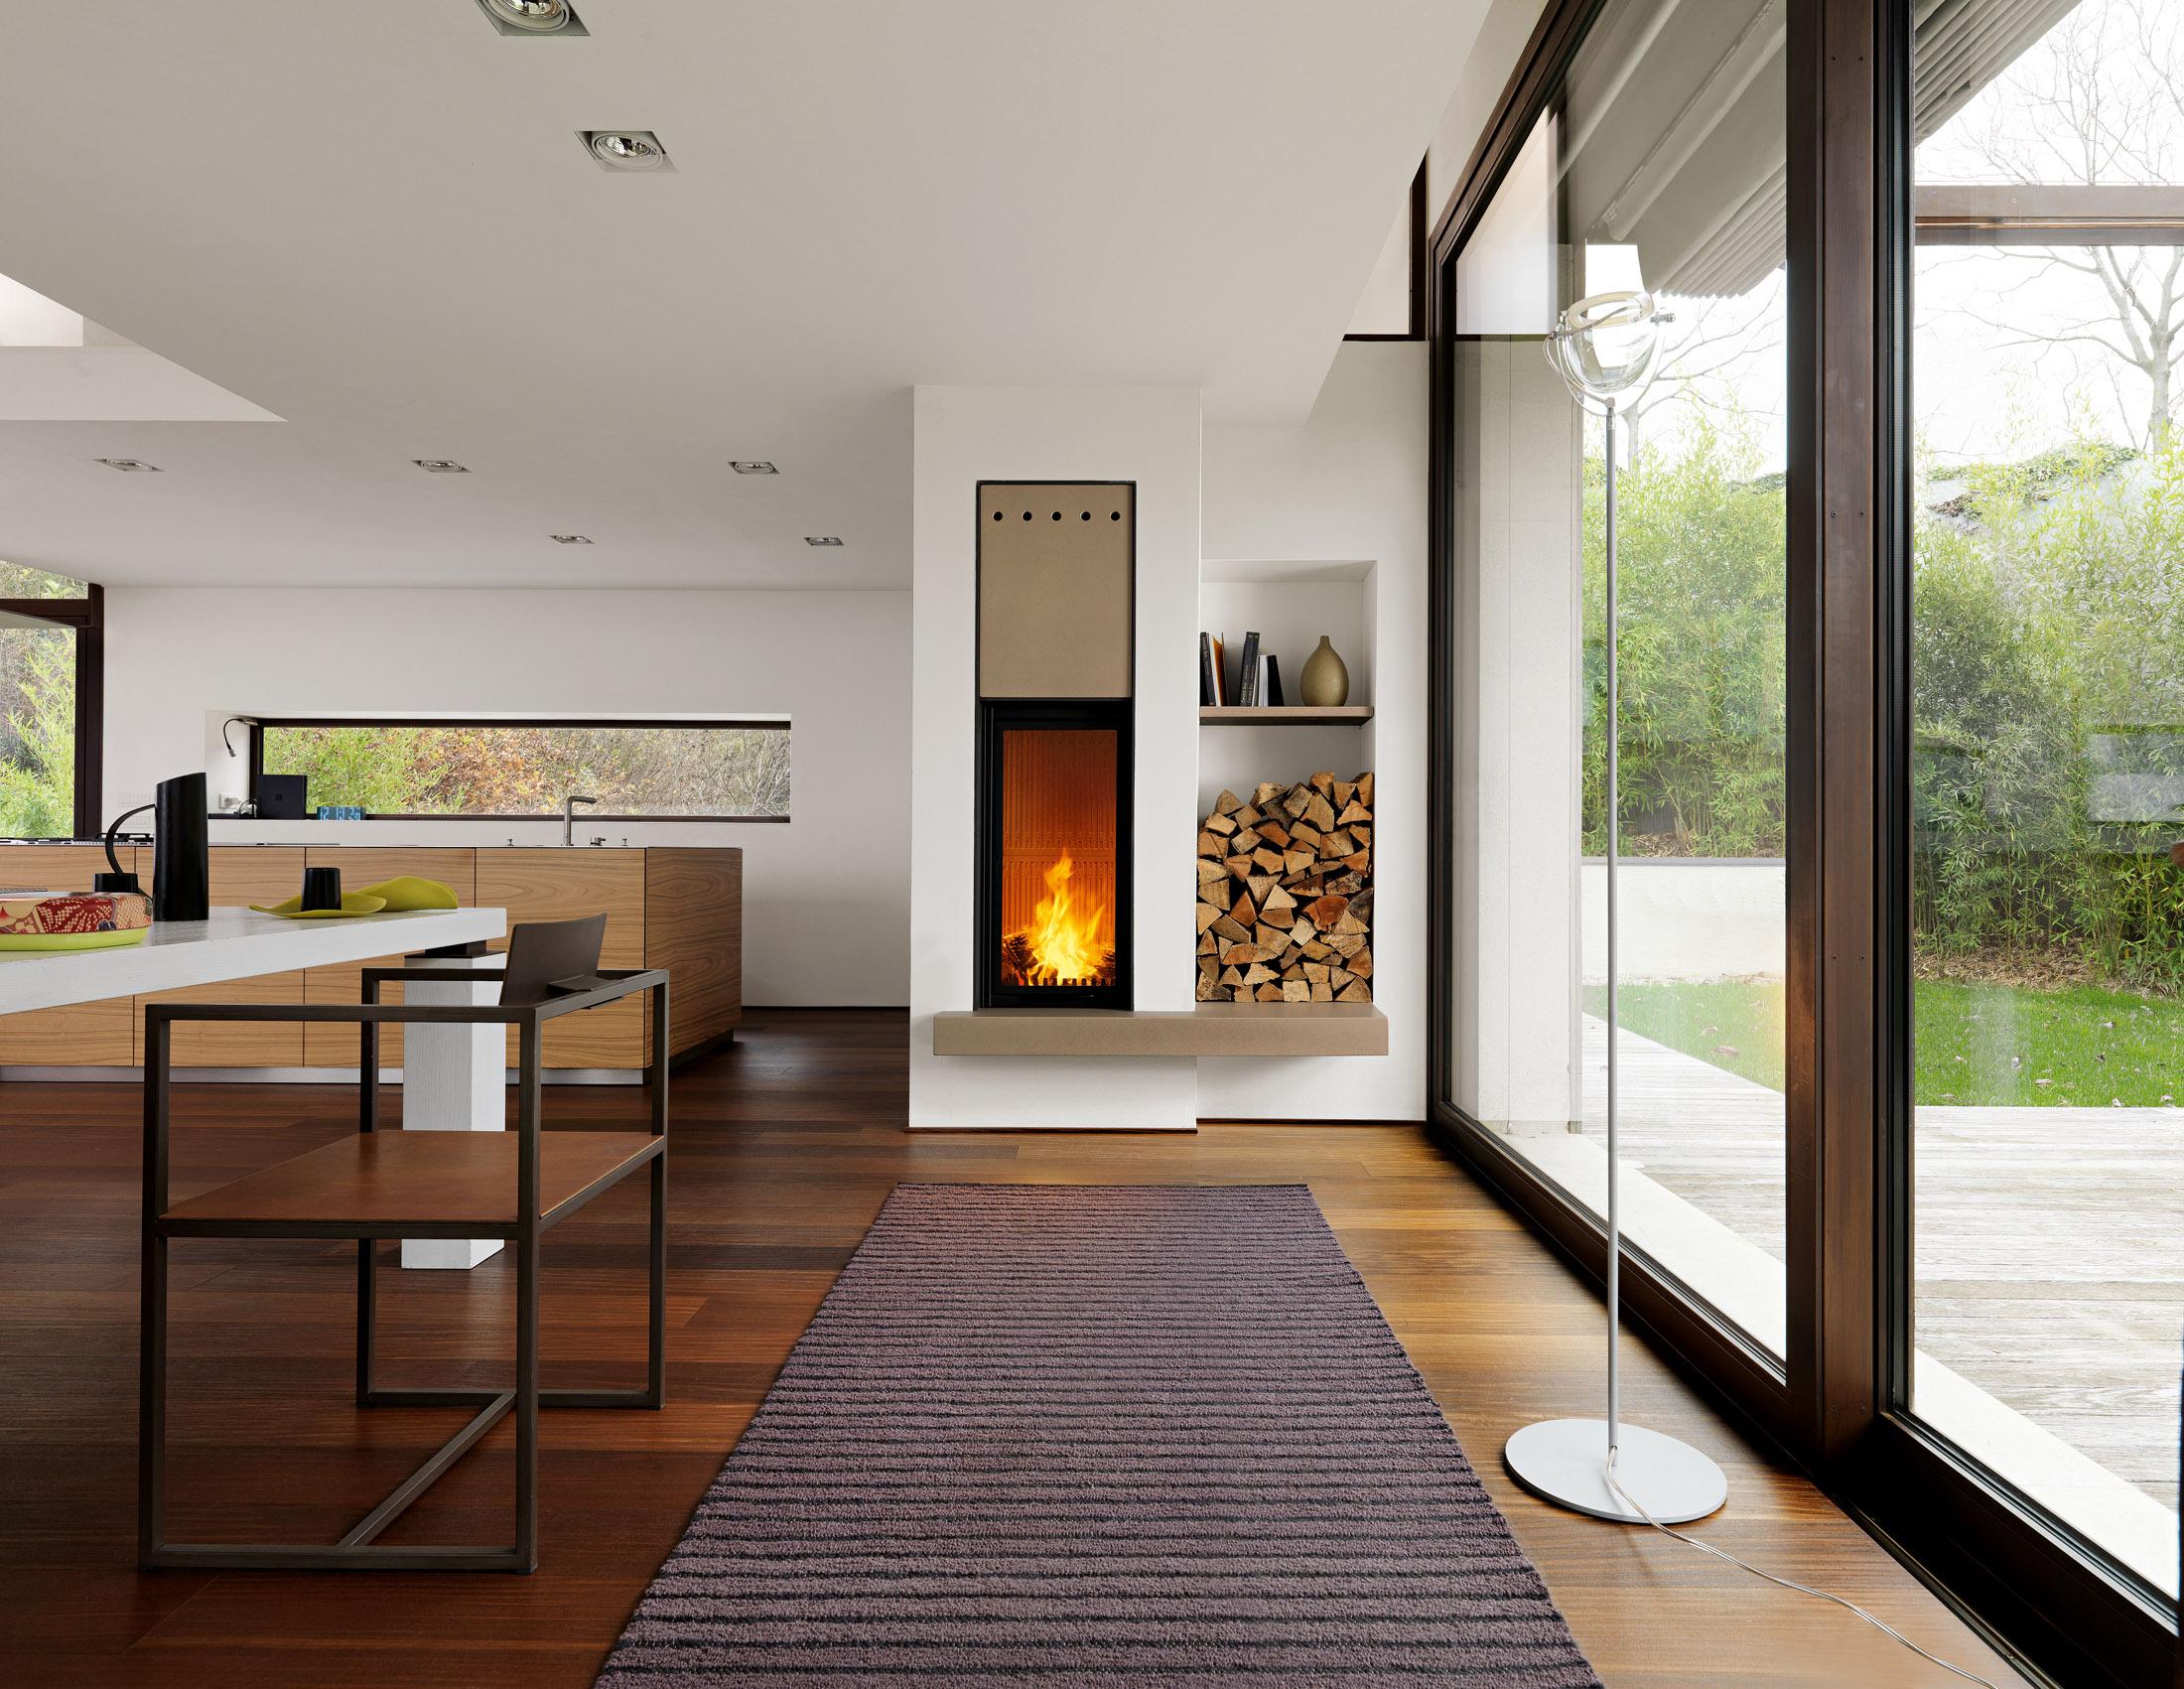 Kamin in minimalistischem Raum #stuhl #teppich #kamin #esstisch #gestreifterteppich #moderneresstisch ©Piazzetta